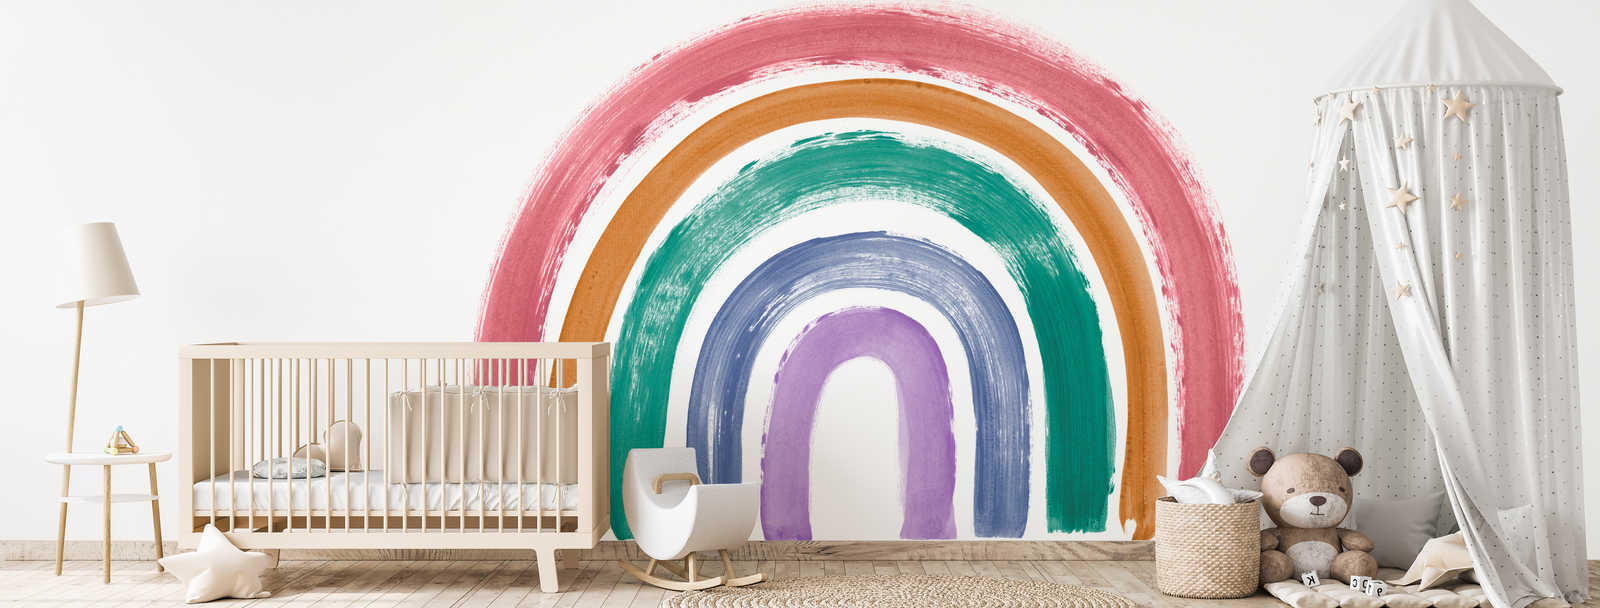             Muurschildering regenboog in heldere retro kleuren
        